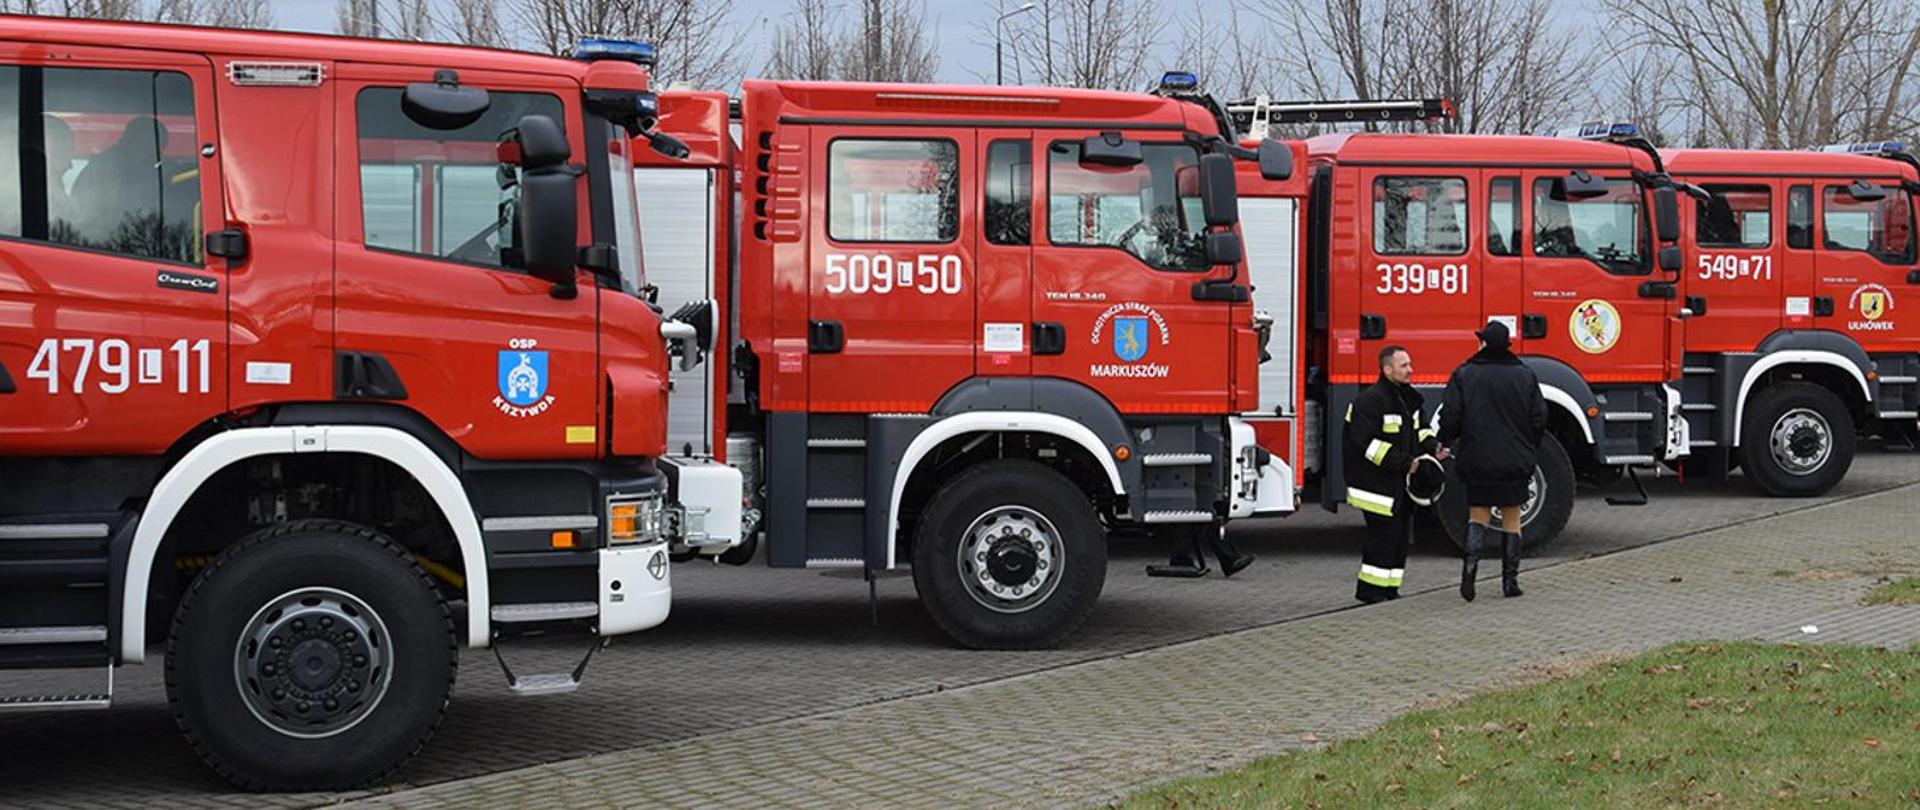 cztery strażackie samochody